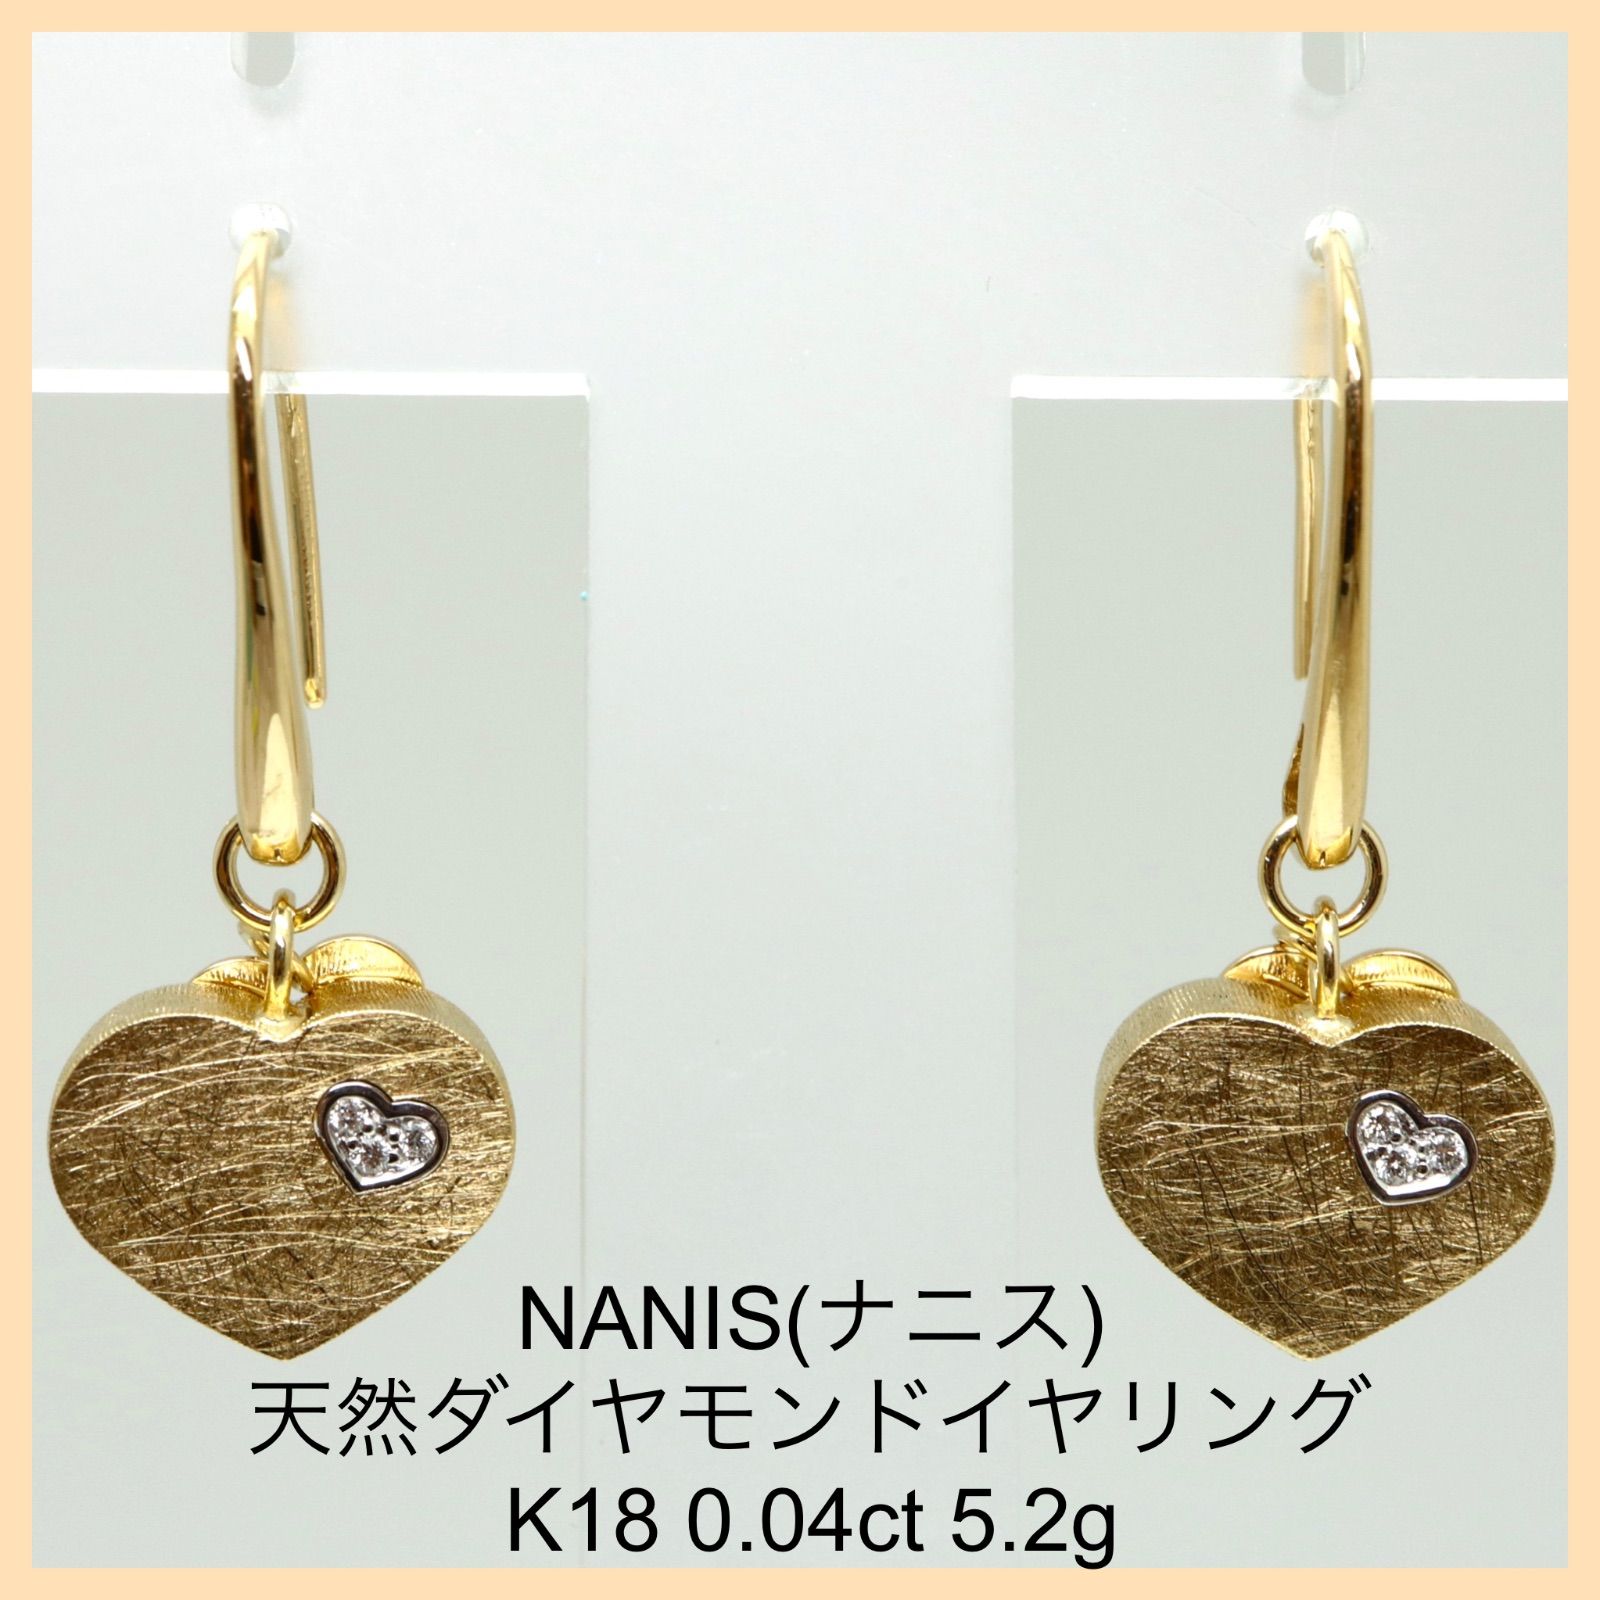 大幅値下げ!!【NANIS(ナニス)天然ダイヤモンド付ハートモチーフピアス】0.04ct K18 5.2g